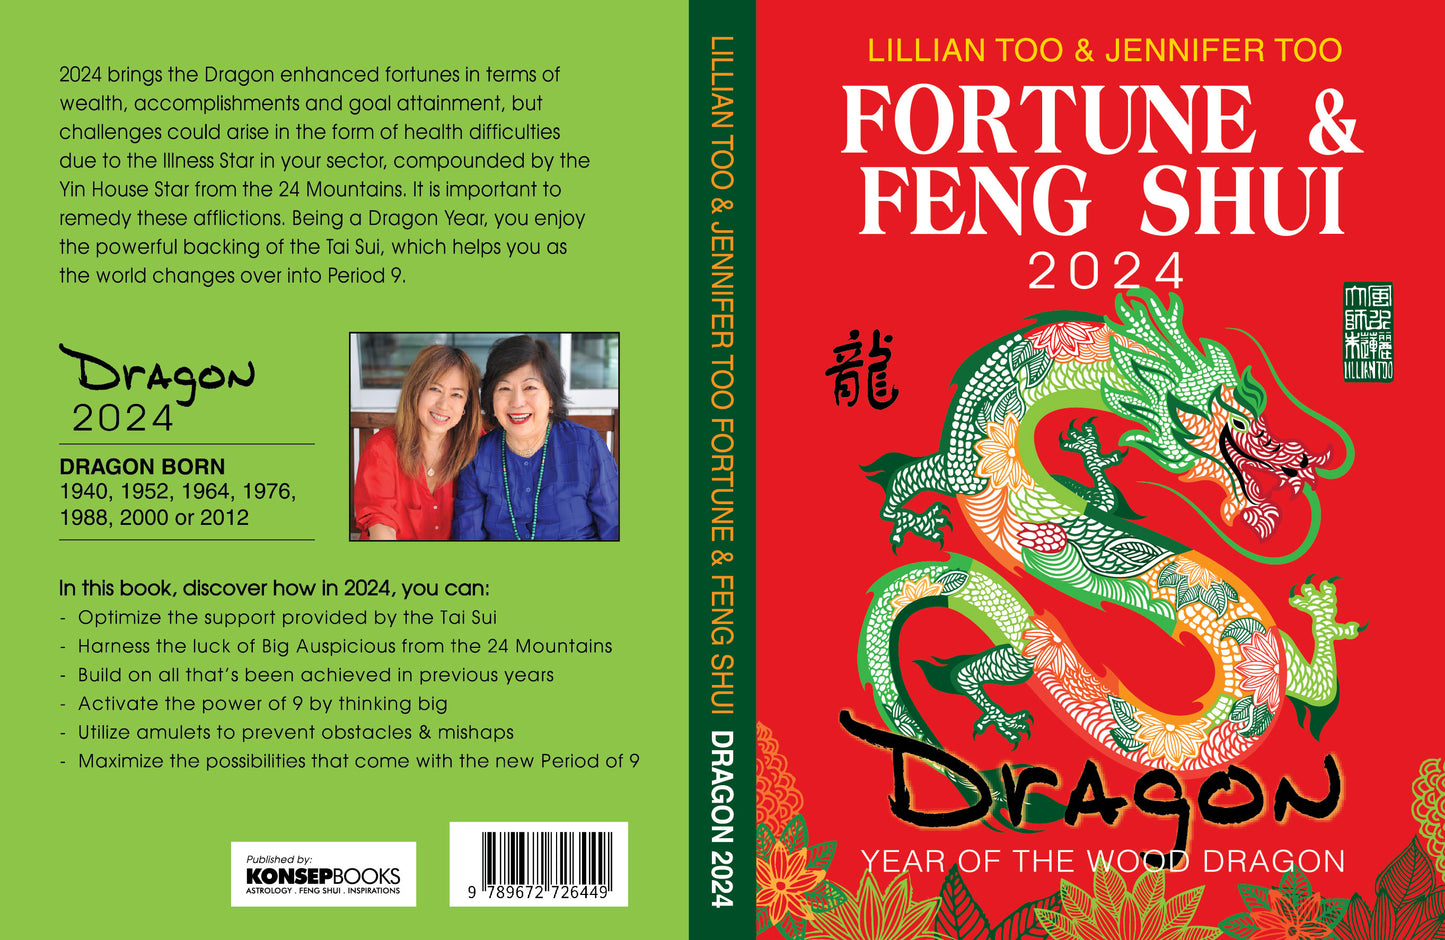 3 BOOKS COMBO - DRAGON - Lillian Too & Jennifer Too Fortune & Feng Shui, Feng Shui Diary, Feng Shui Almanac 2024 - 6733